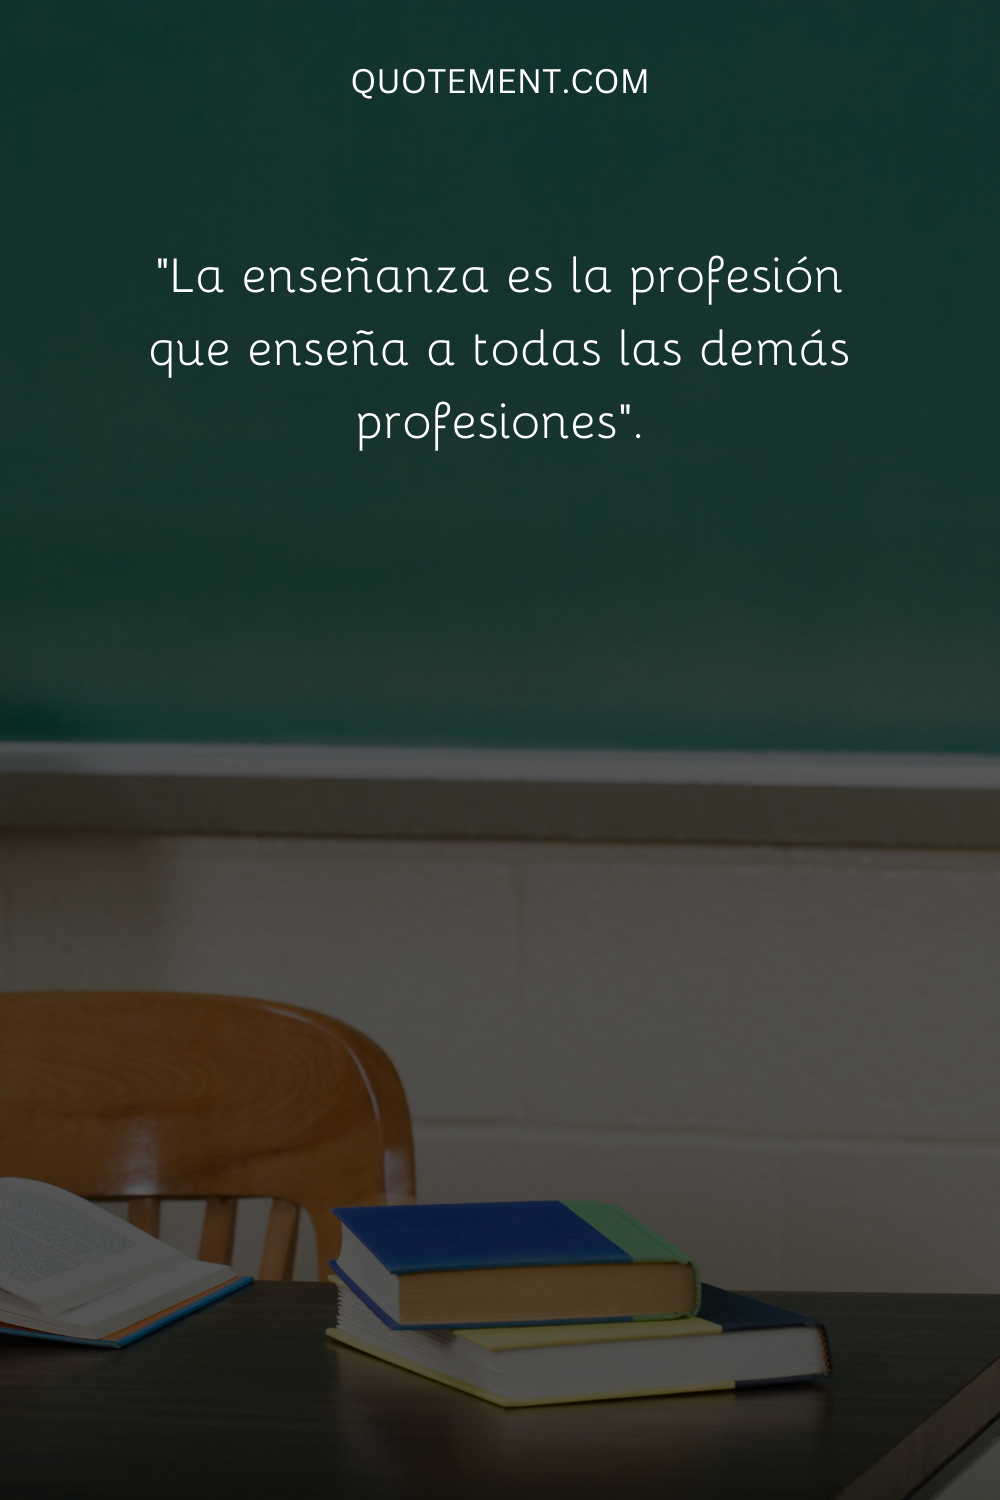 La enseñanza es la profesión que enseña a todas las demás profesiones